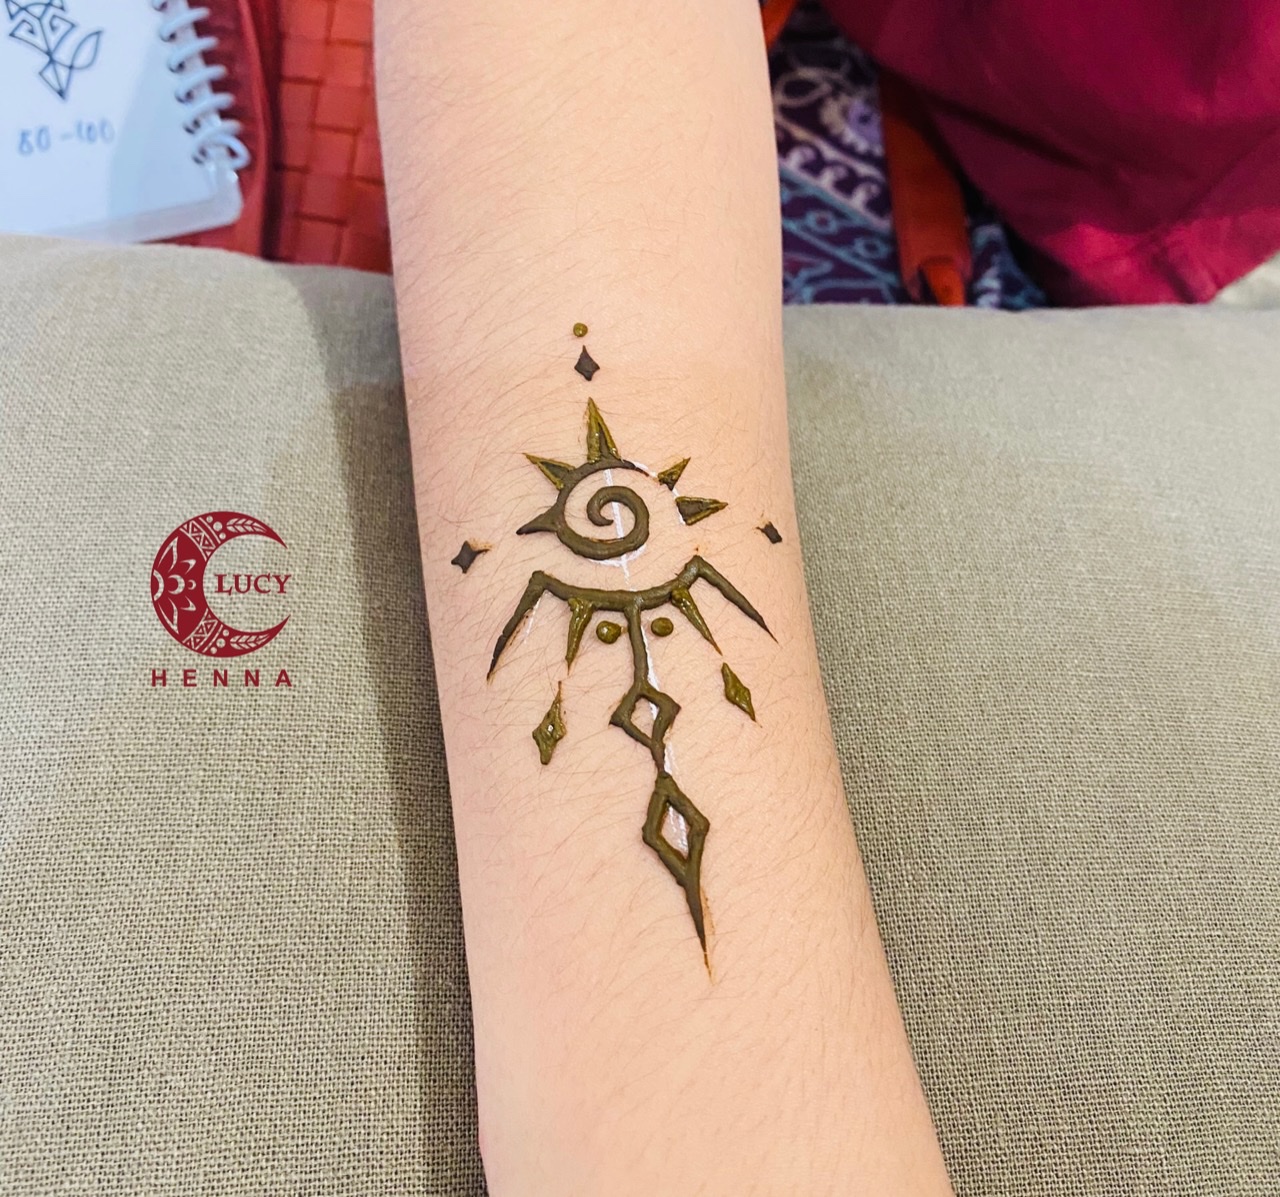 Hình vẽ henna cổ tay: Cổ tay là một vị trí rất phổ biến để vẽ henna, và các họa tiết henna trên cổ tay thường rất ấn tượng và đẹp mắt. Hãy khám phá những mẫu hình vẽ henna cổ tay độc đáo và đầy sáng tạo để trang trí cho bàn tay của bạn.